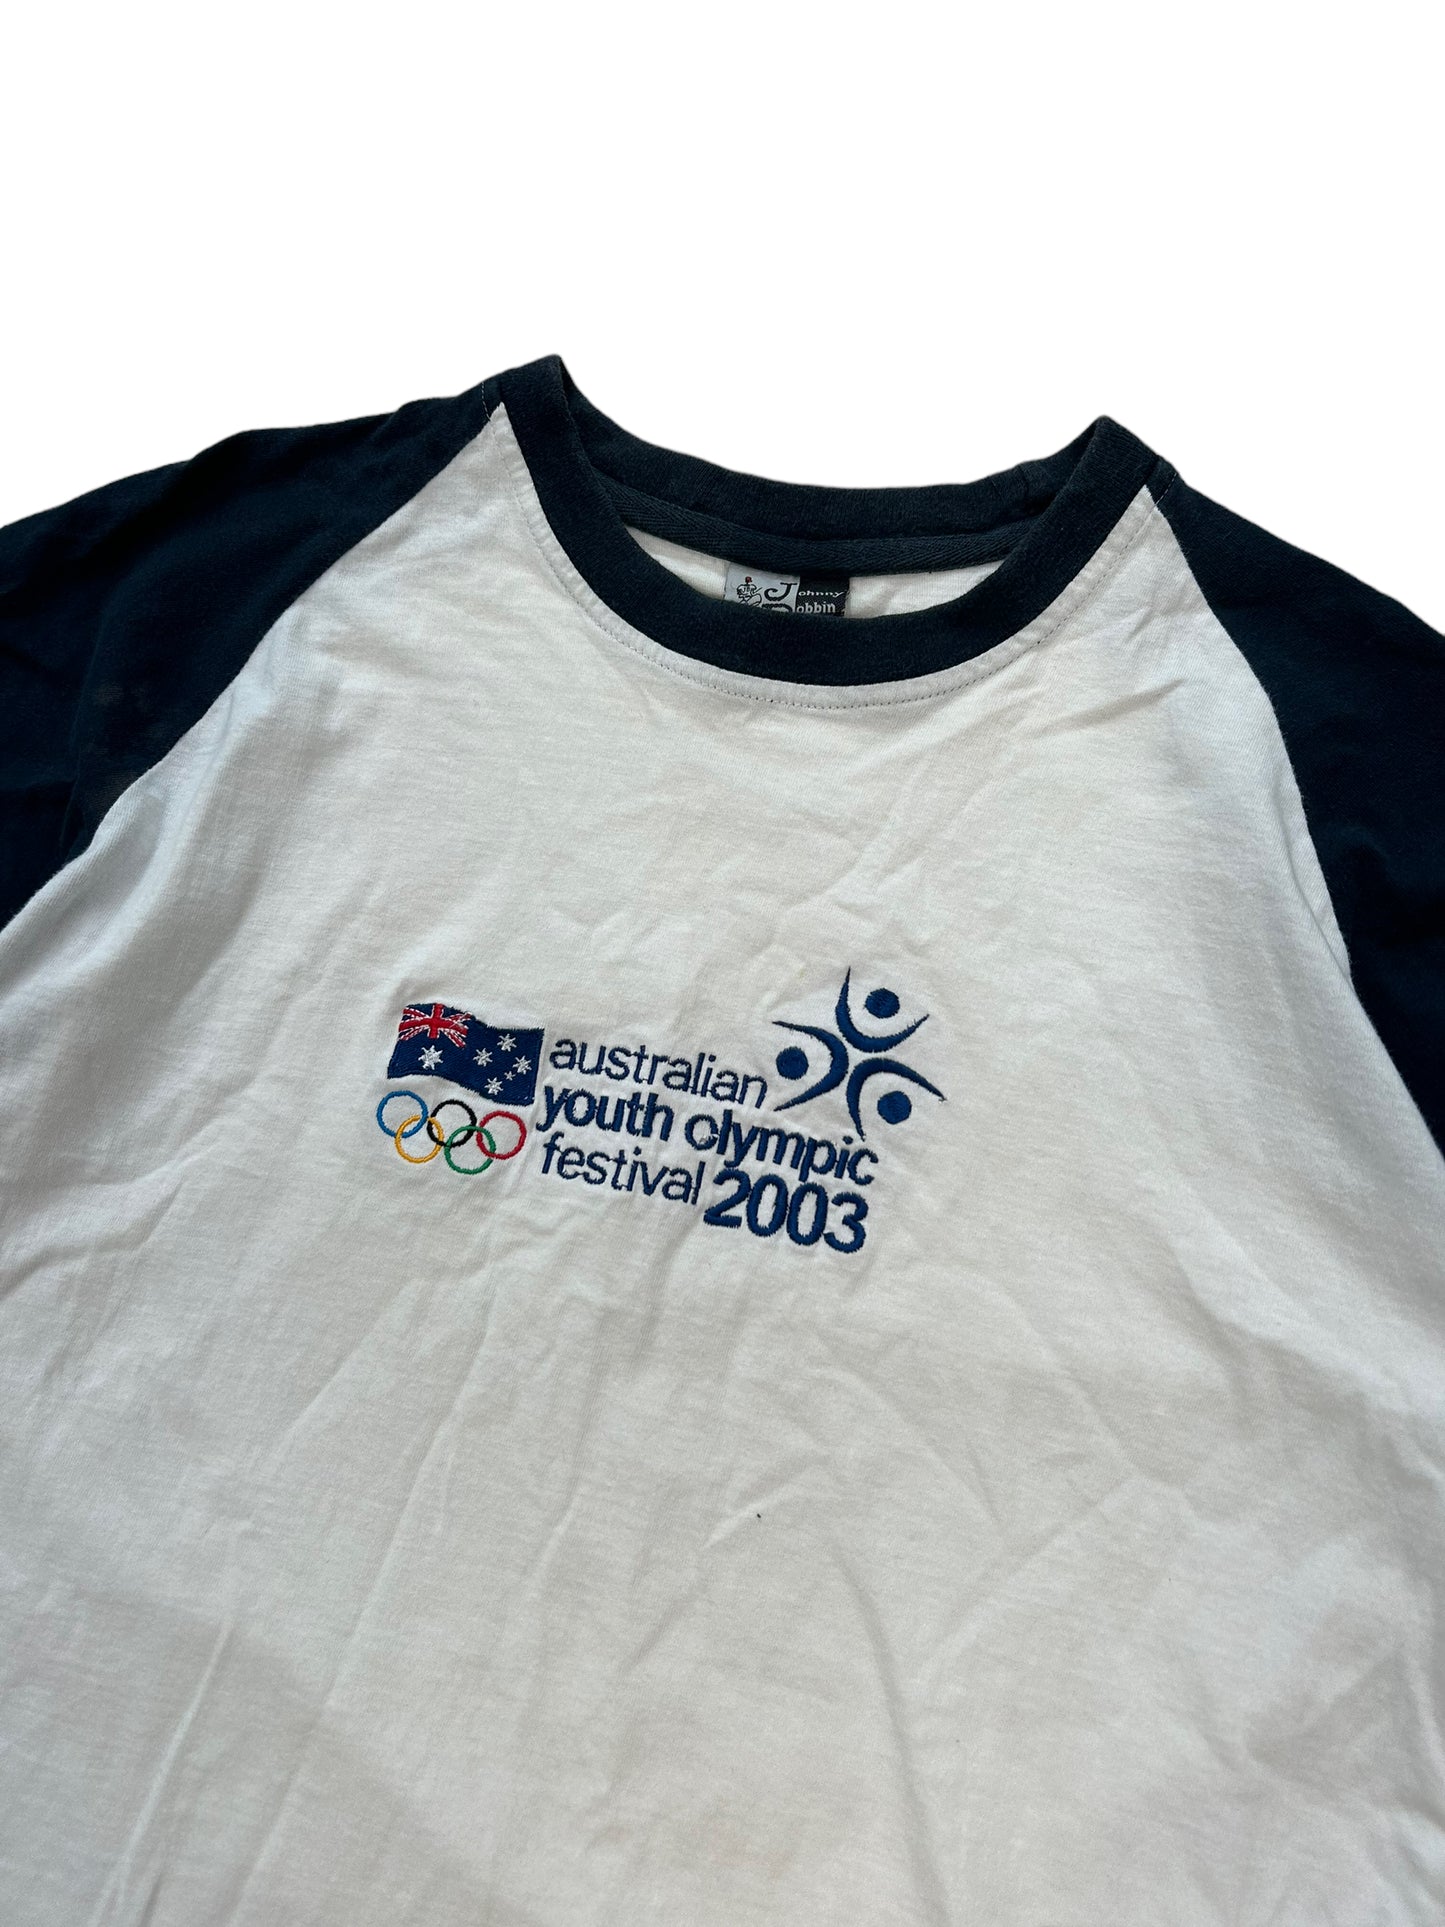 2003 Youth Olympics Tee